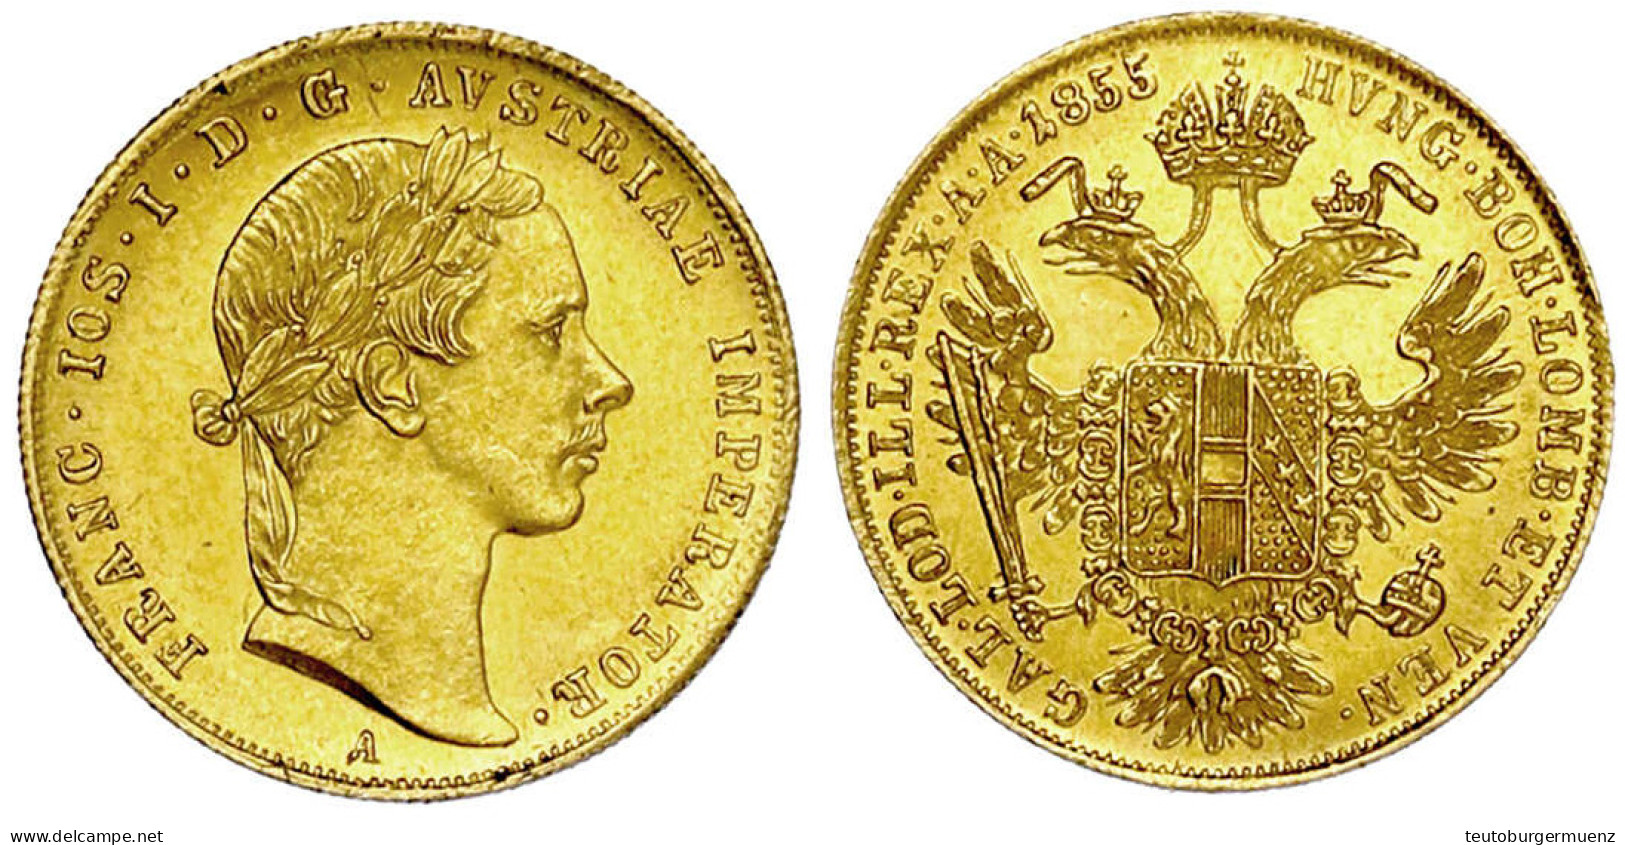 Dukat 1855 A, Wien. 3,50 G. Vorzüglich/Stempelglanz. Herinek 78. Friedberg 490. - Gold Coins